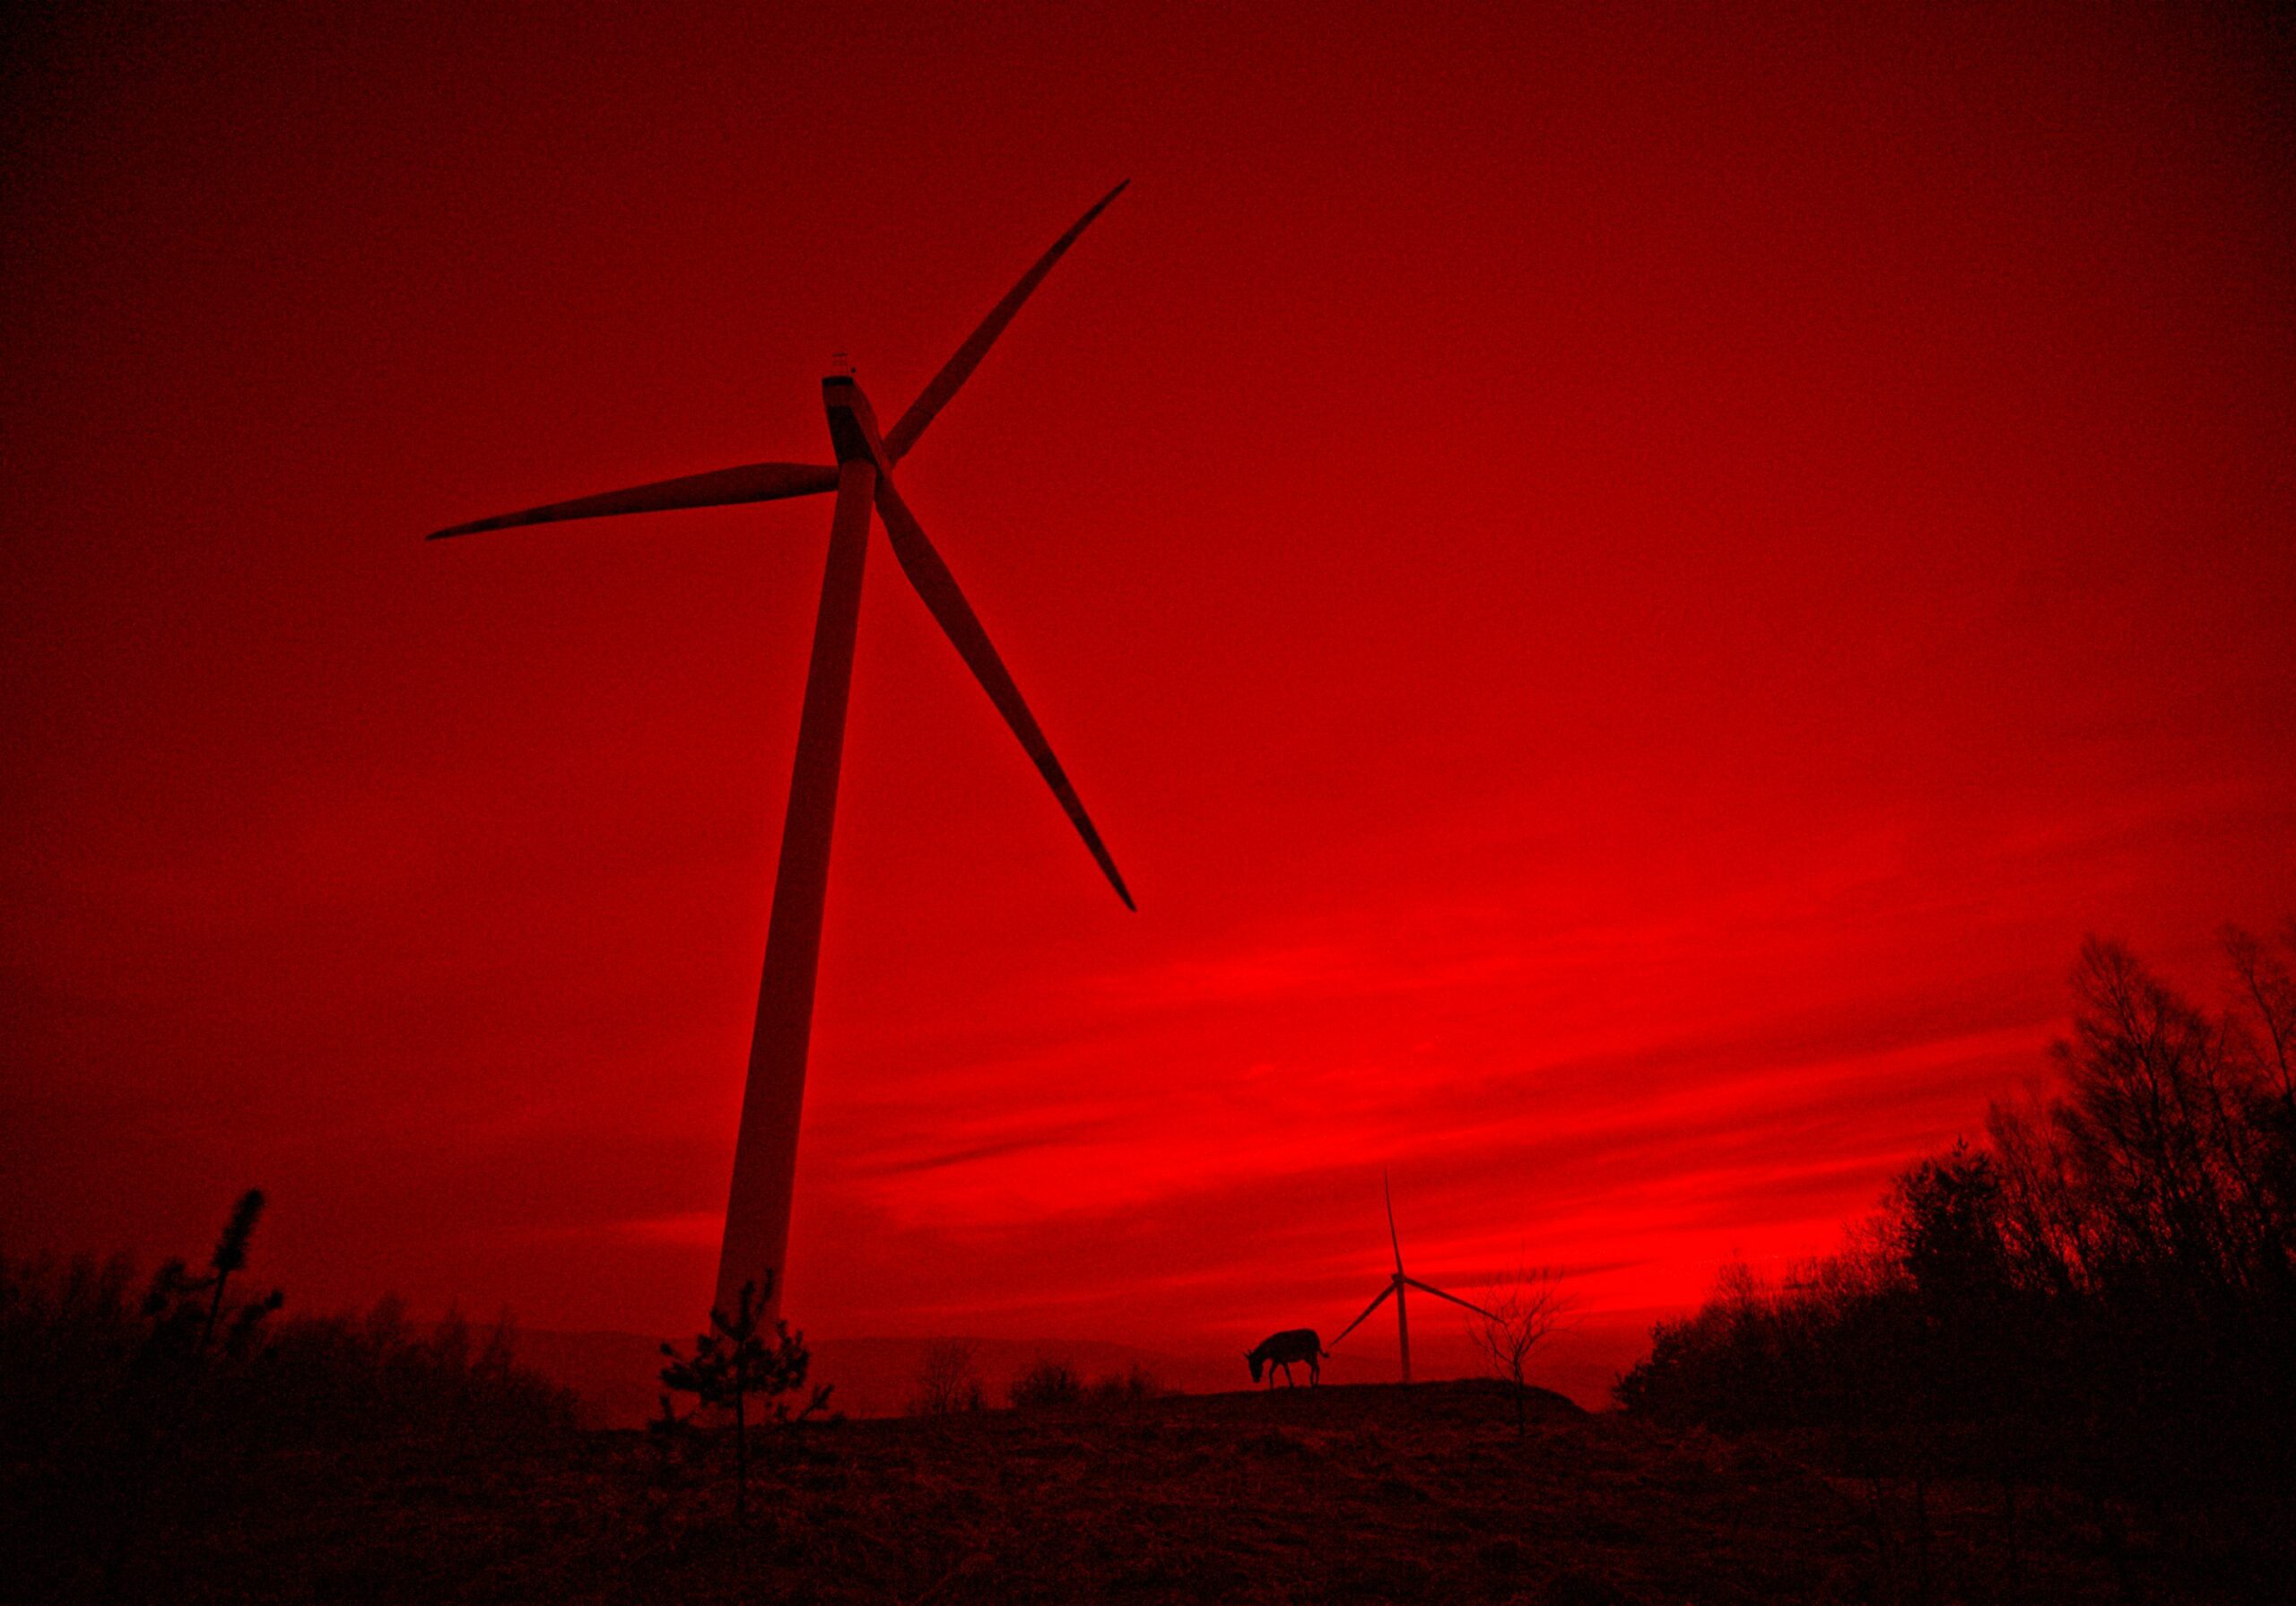 A windmill in the red sunset sky as seen in EO by Jerzy Skolimowski